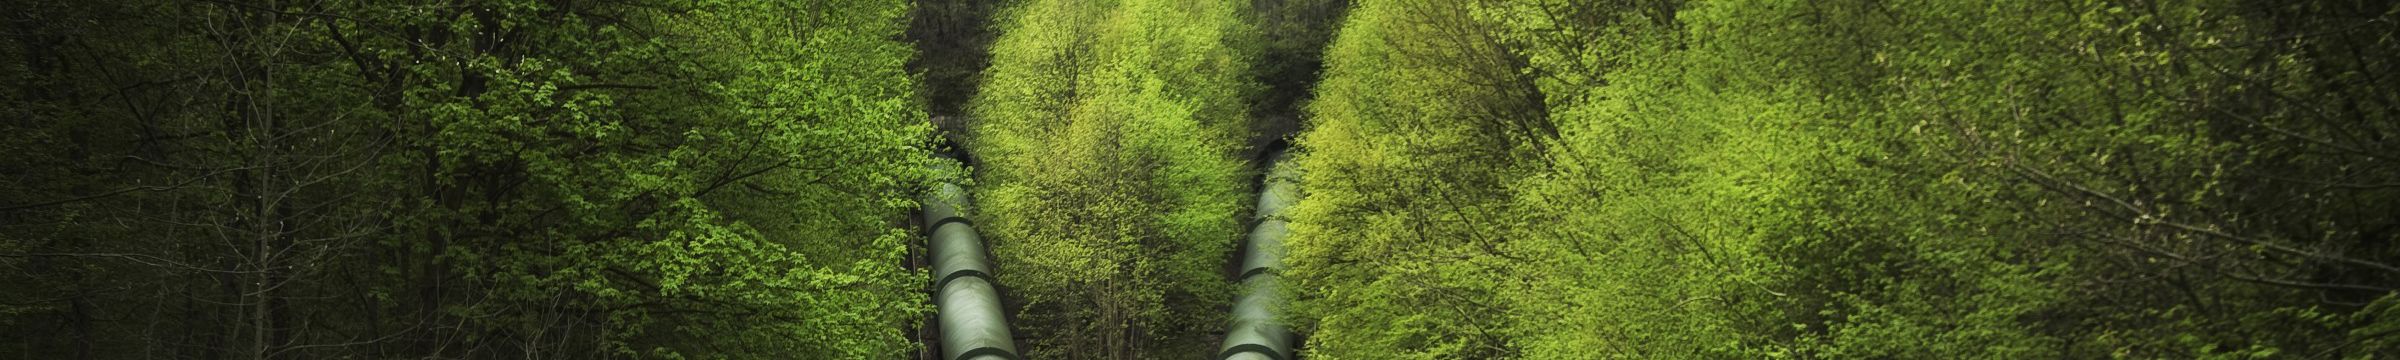 Pressure pipelines in green surroundings